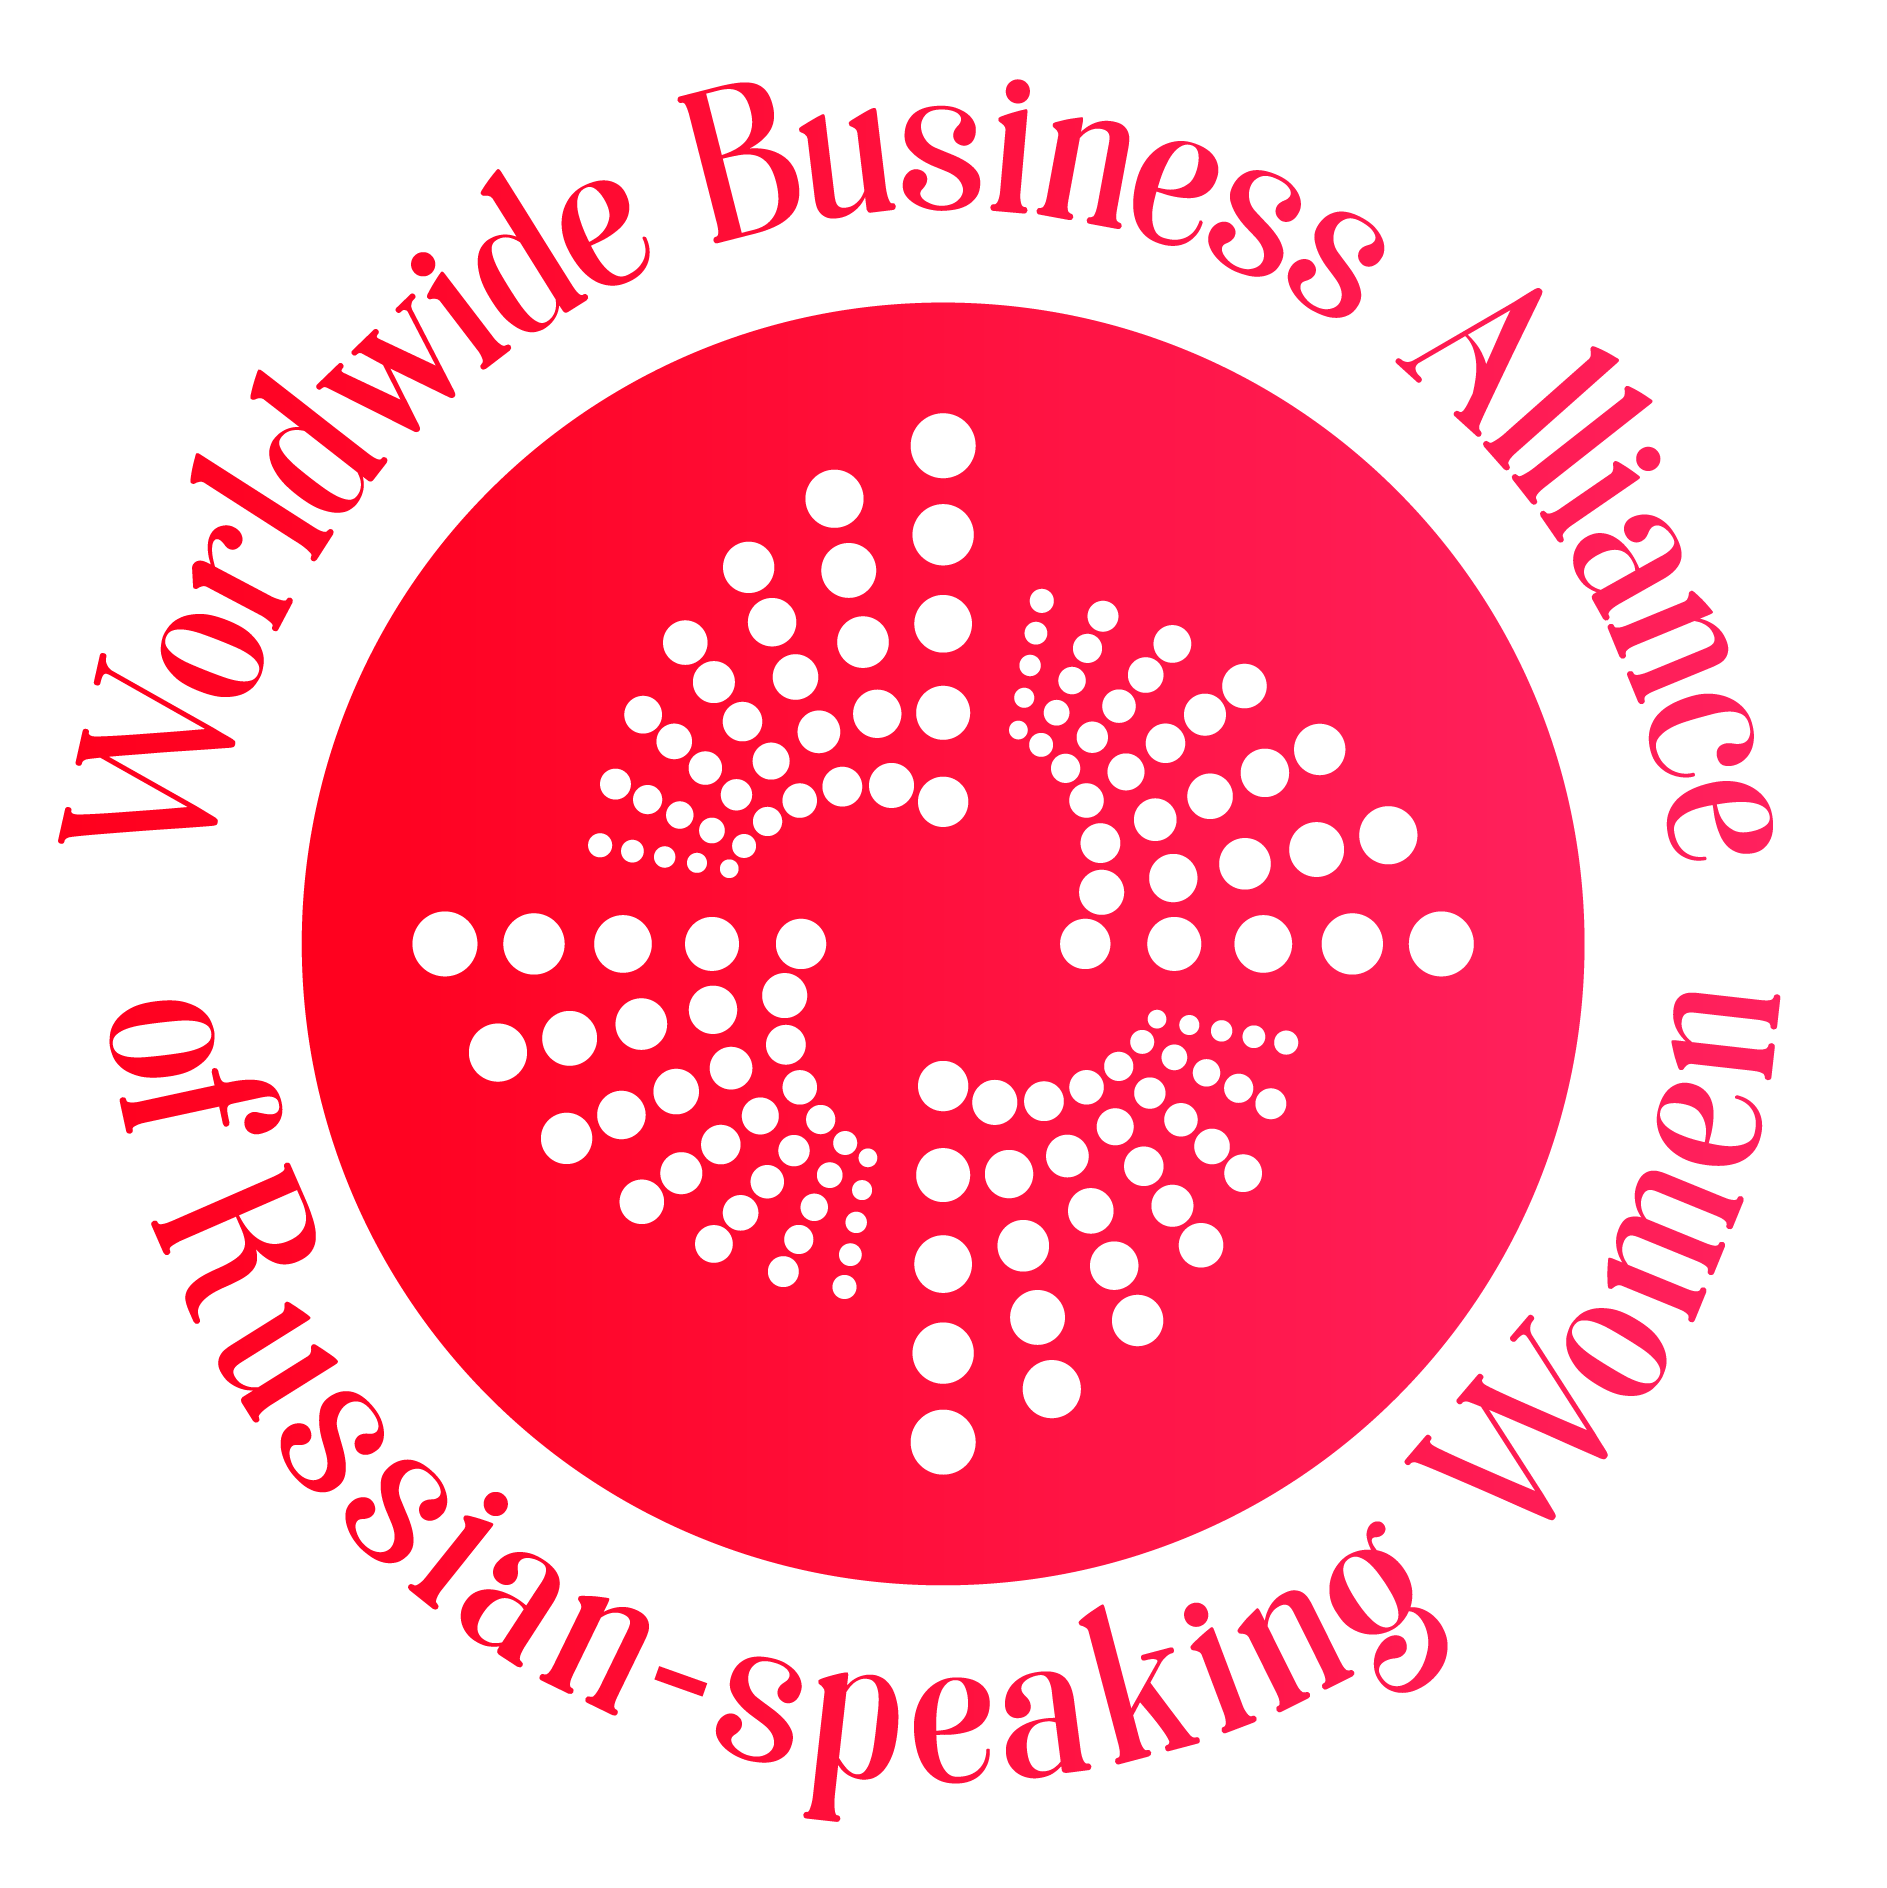 Всемирный бизнес-альянс русскоговорящих женщин